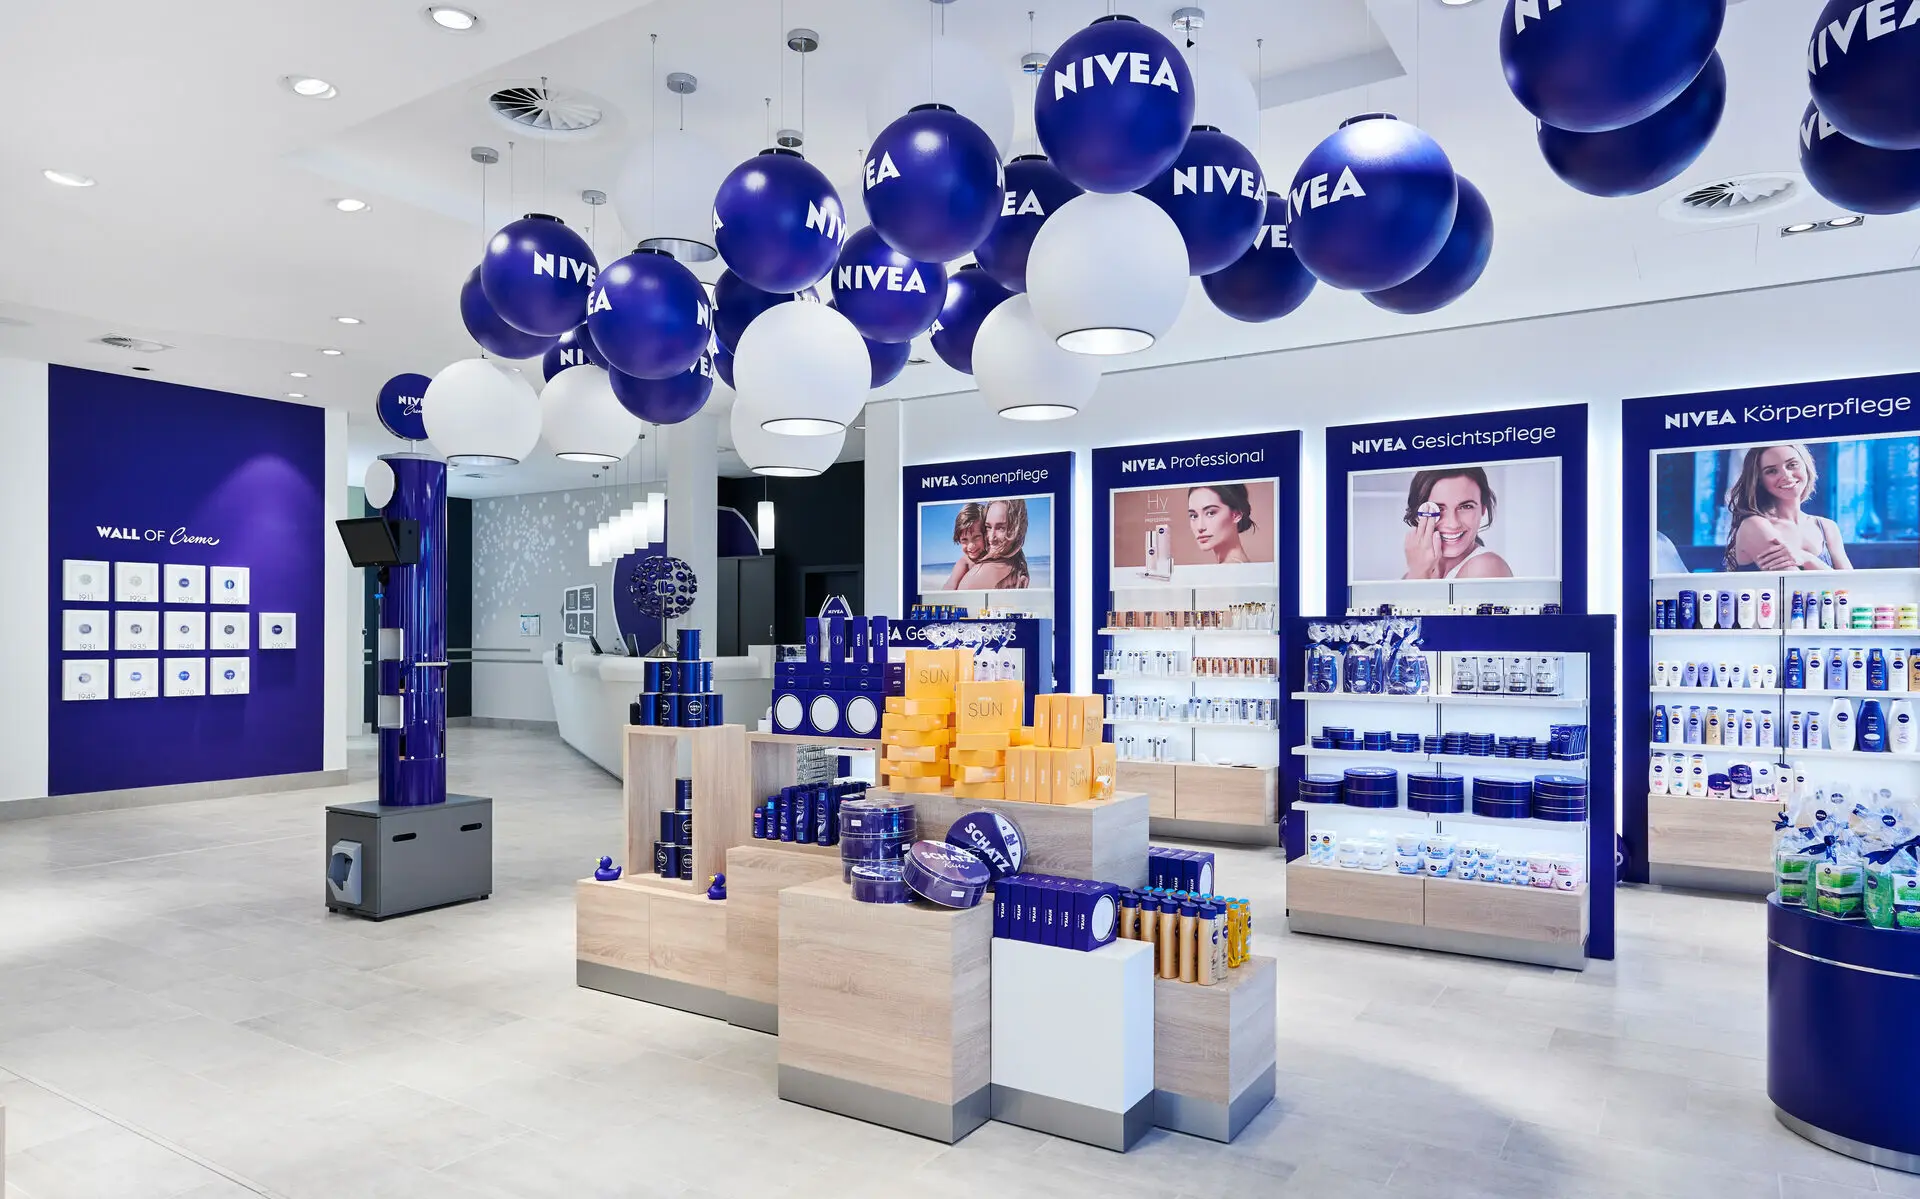 In einem Verkaufsraum mit hellem Holzboden und weißen und dunkelblauen Wänden sind diverse NIVEA Produkte in den Regalen und verschiedenen Verkaufsaufstellern zu erkennen. An der Decke hängen blaue und weiße Luftballons mit dem NIVEA Logo bedruckt.